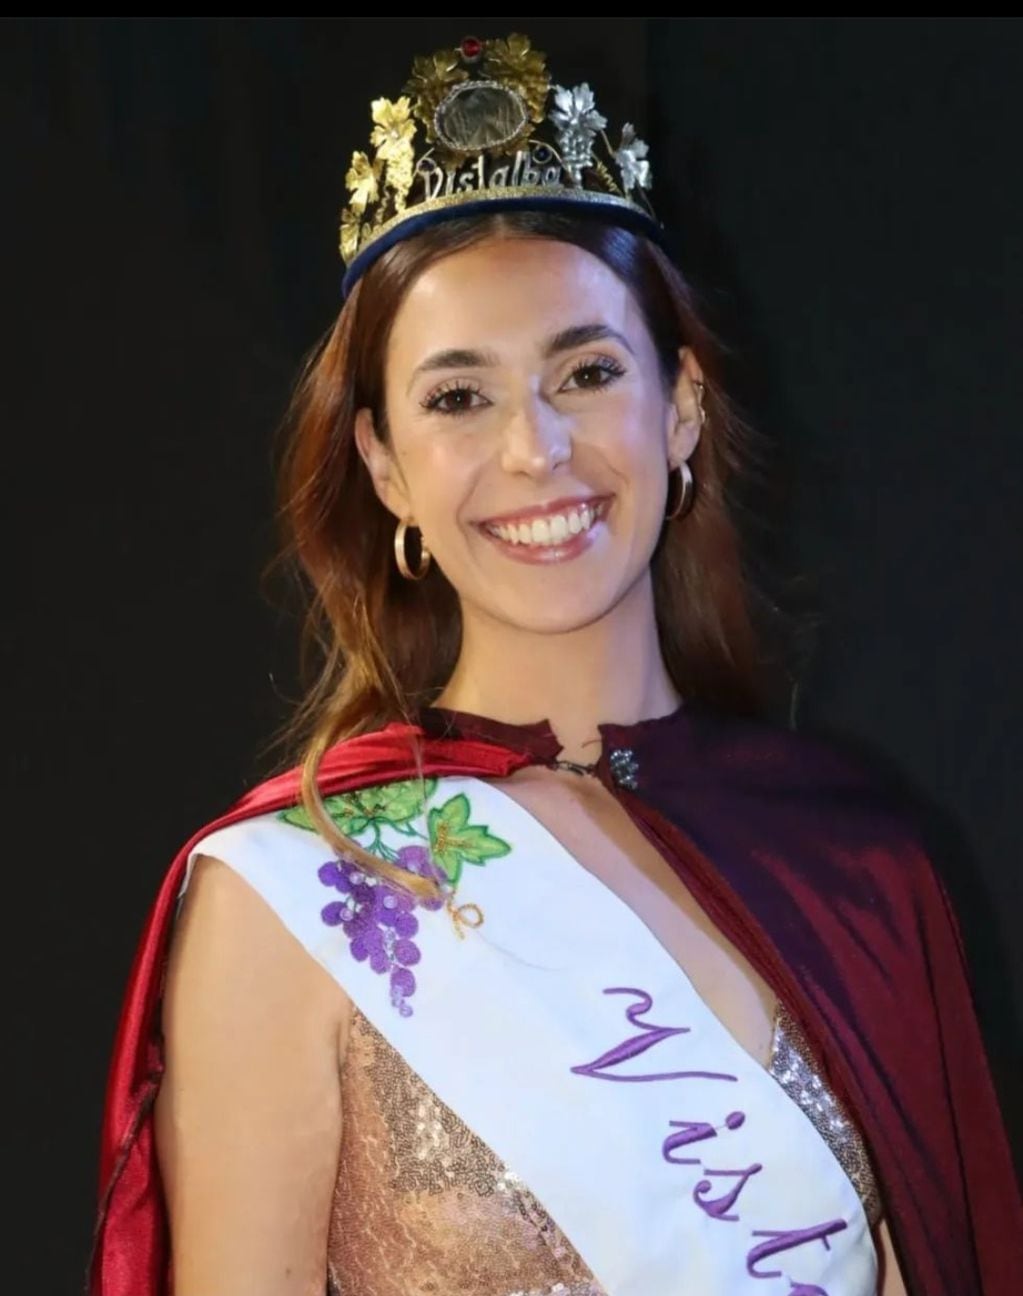 María Emilia Campagnani, reina del distrito de Vistalba.